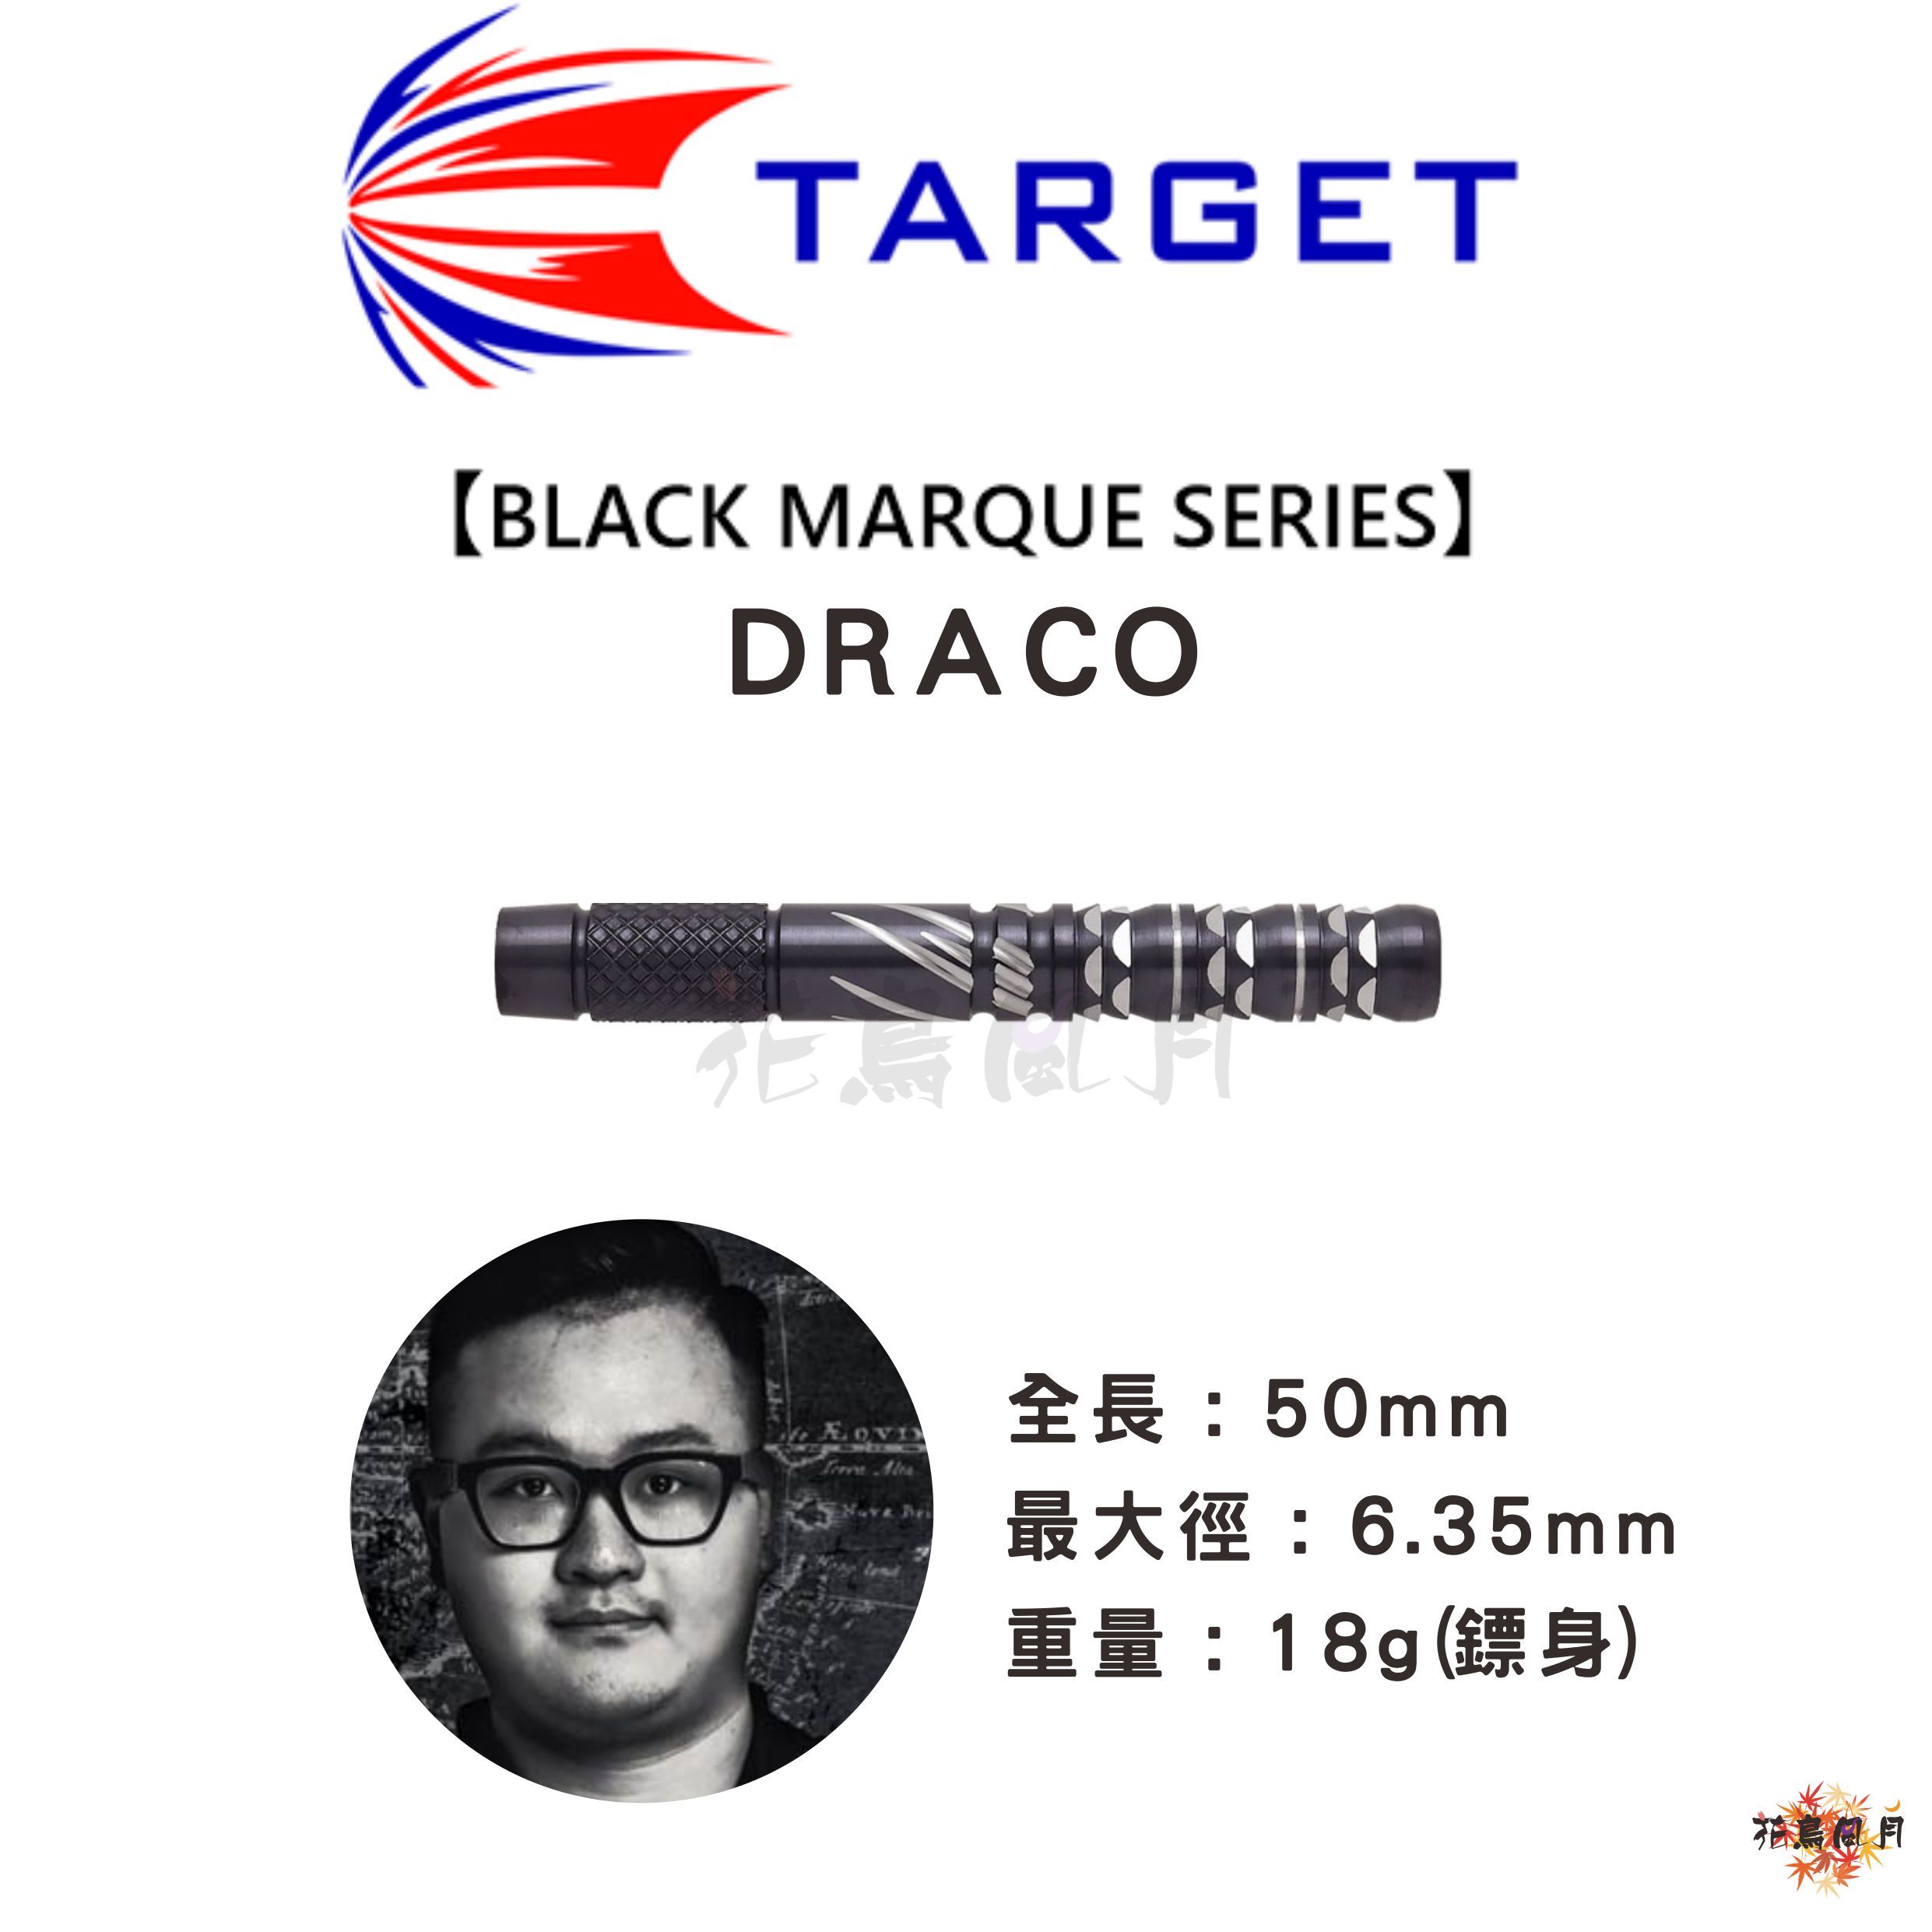 TARGETターゲット-BLACK-MARQUE-SERIESブラックマークシリーズ-DRACO.jpg